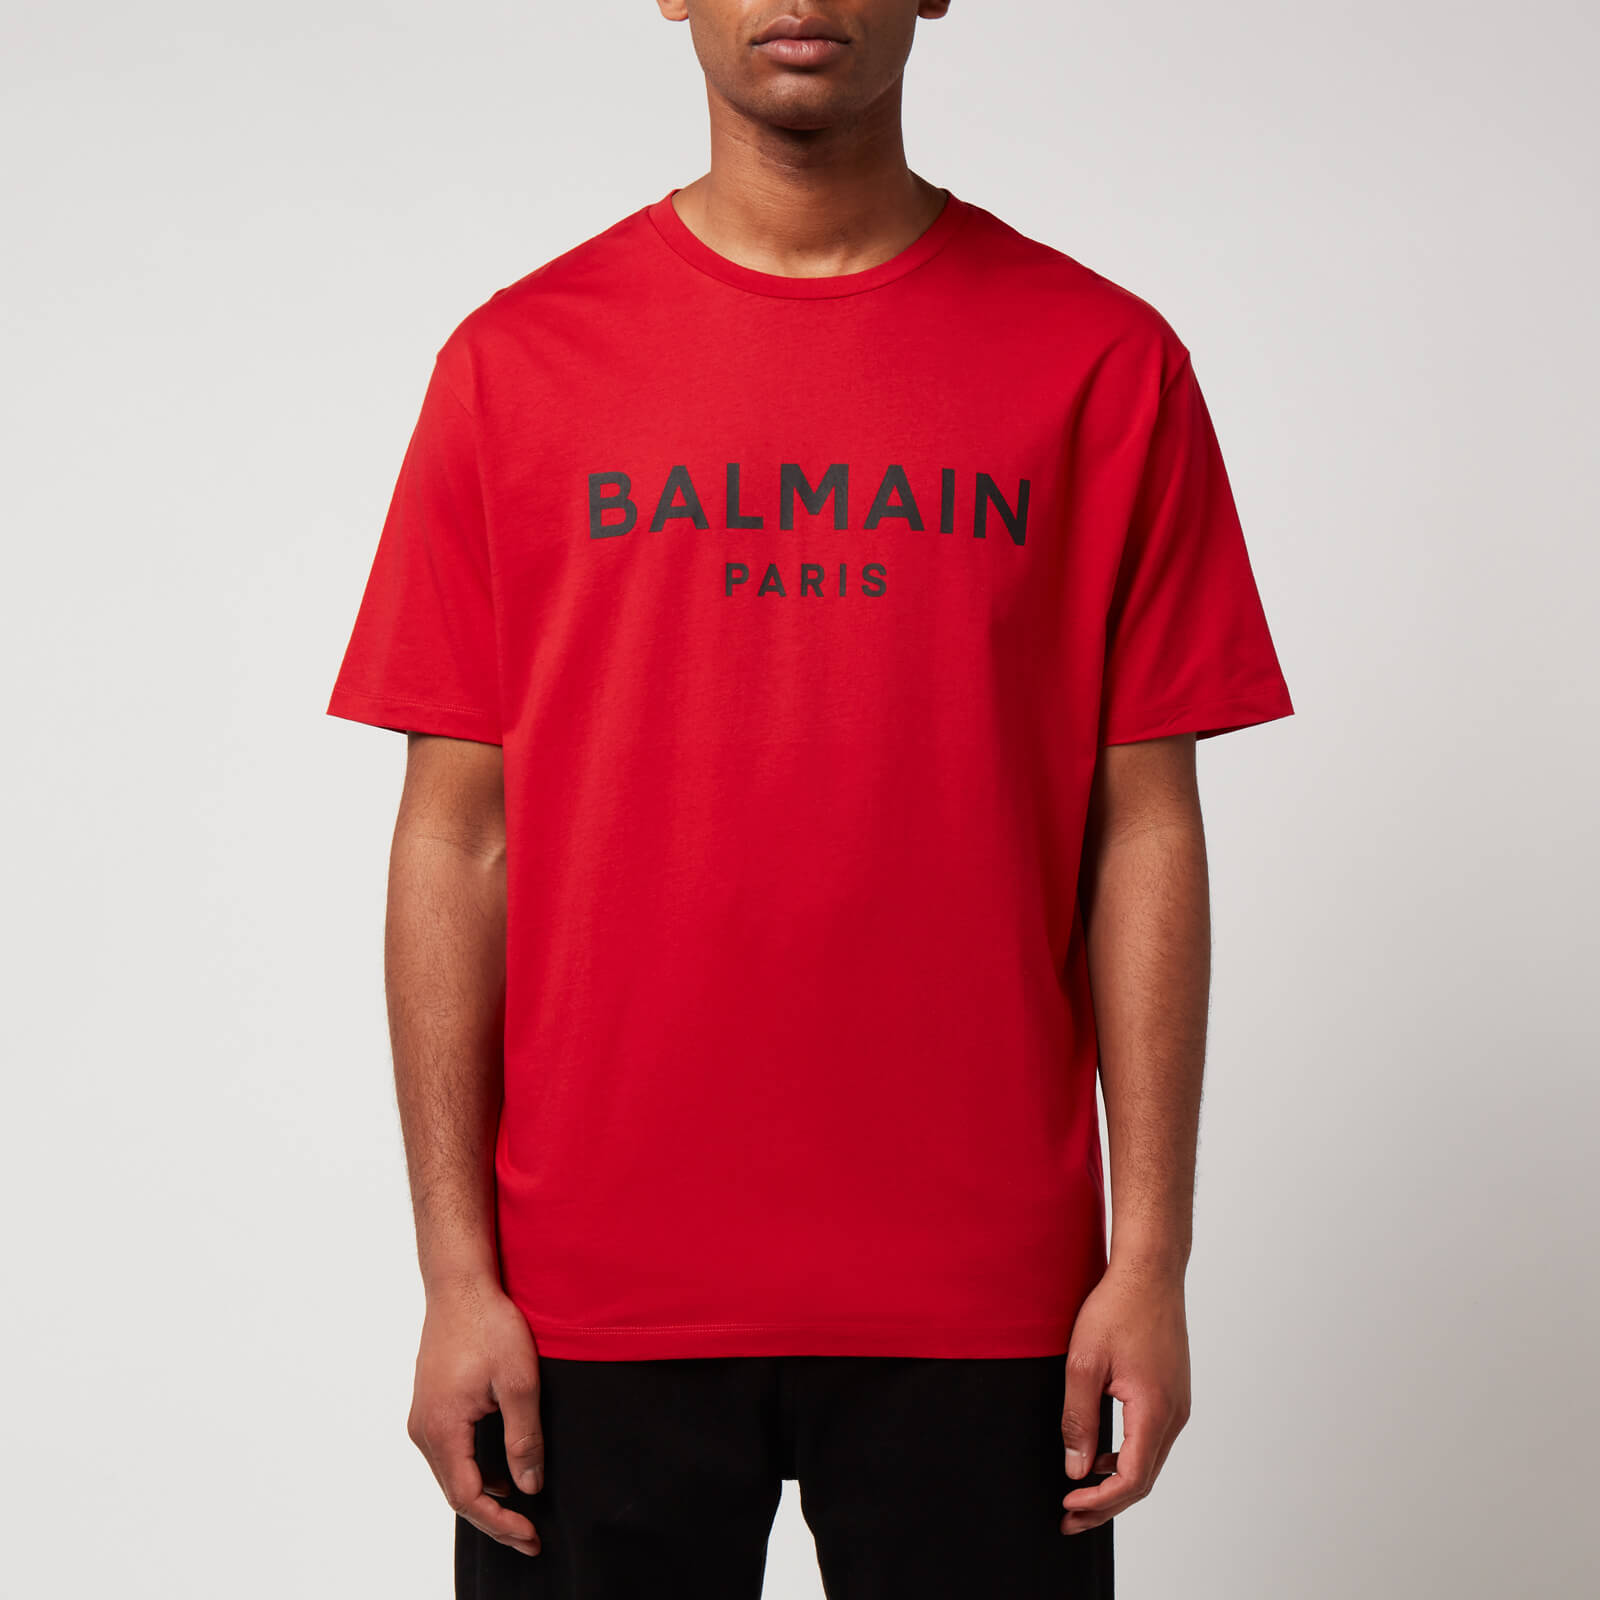 balmain men's printed t-shirt - red/black - l